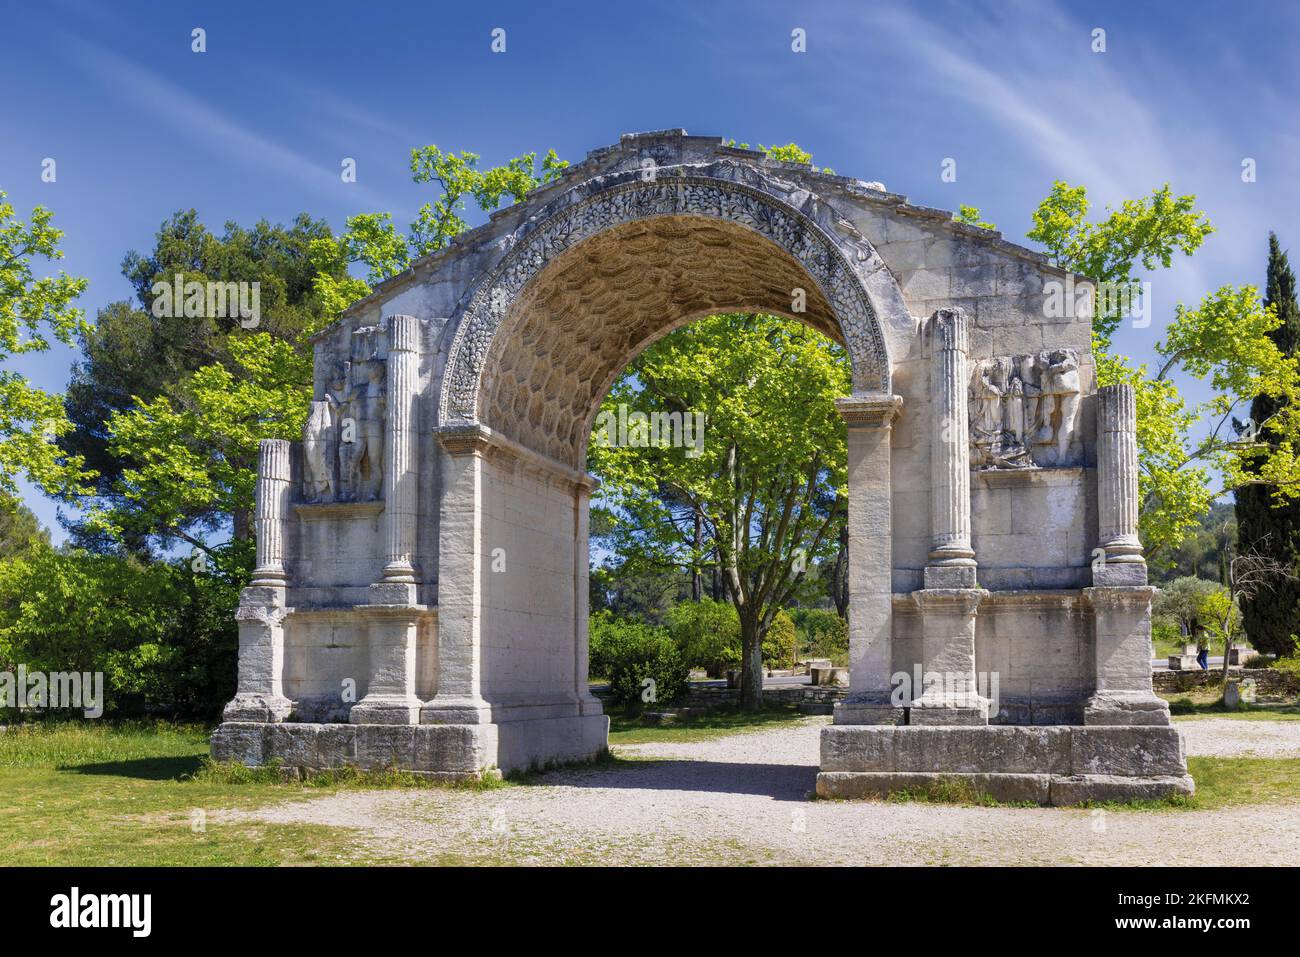 Saint-Rémy-de-Provence, Bouches-du-Rhône, Provenza, Francia. El Arco Municipal, un arco triunfal que fue la entrada a la ciudad romana de Glanum. Foto de stock